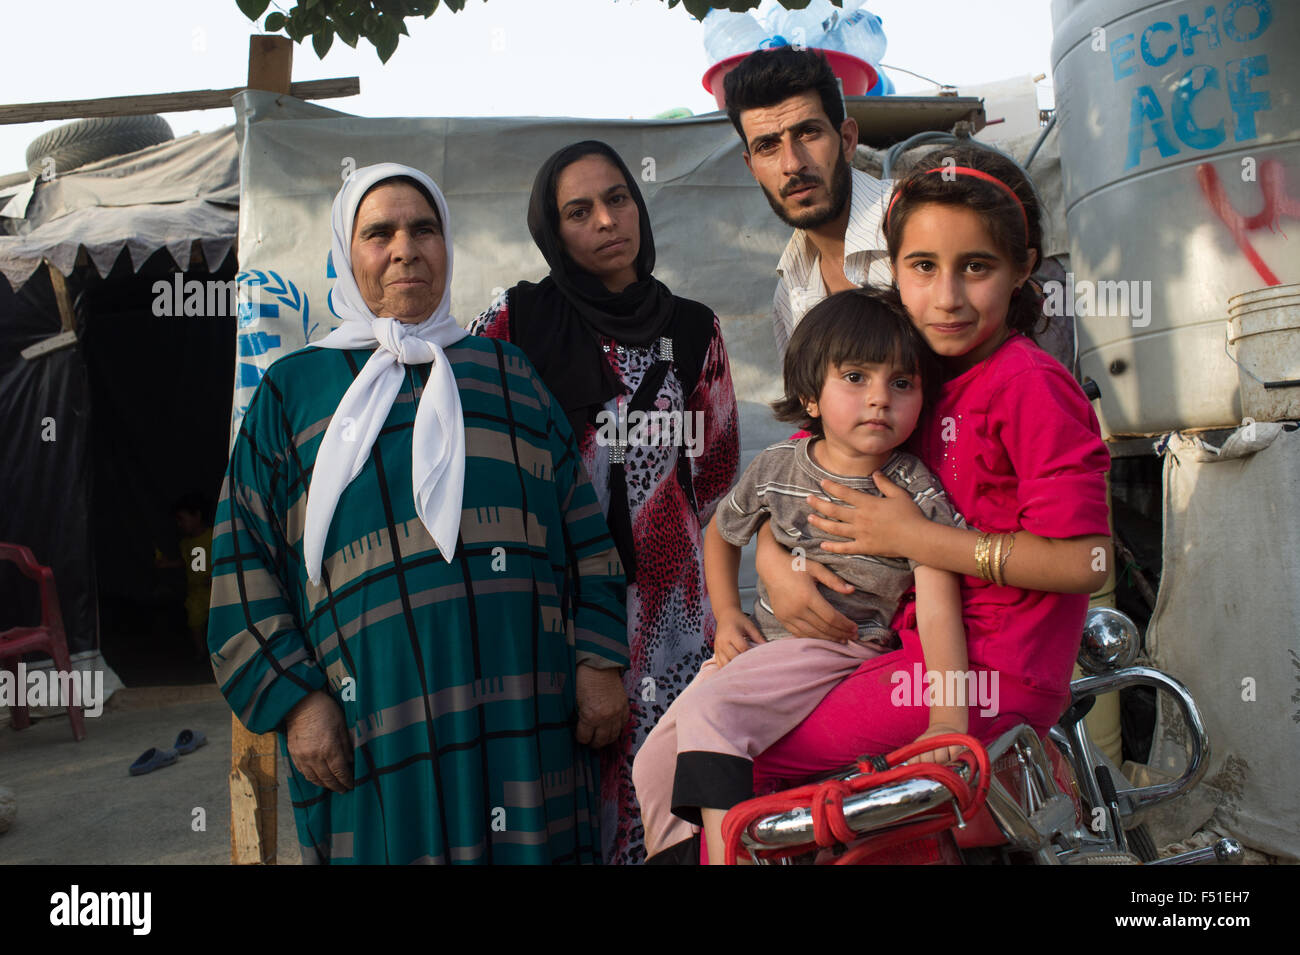 Famille de réfugiés syriens dans la vallée de la Bekka près de Zahlé, dans le camp de l'ONU. Zahlé, Liban Juillet 2015 Banque D'Images